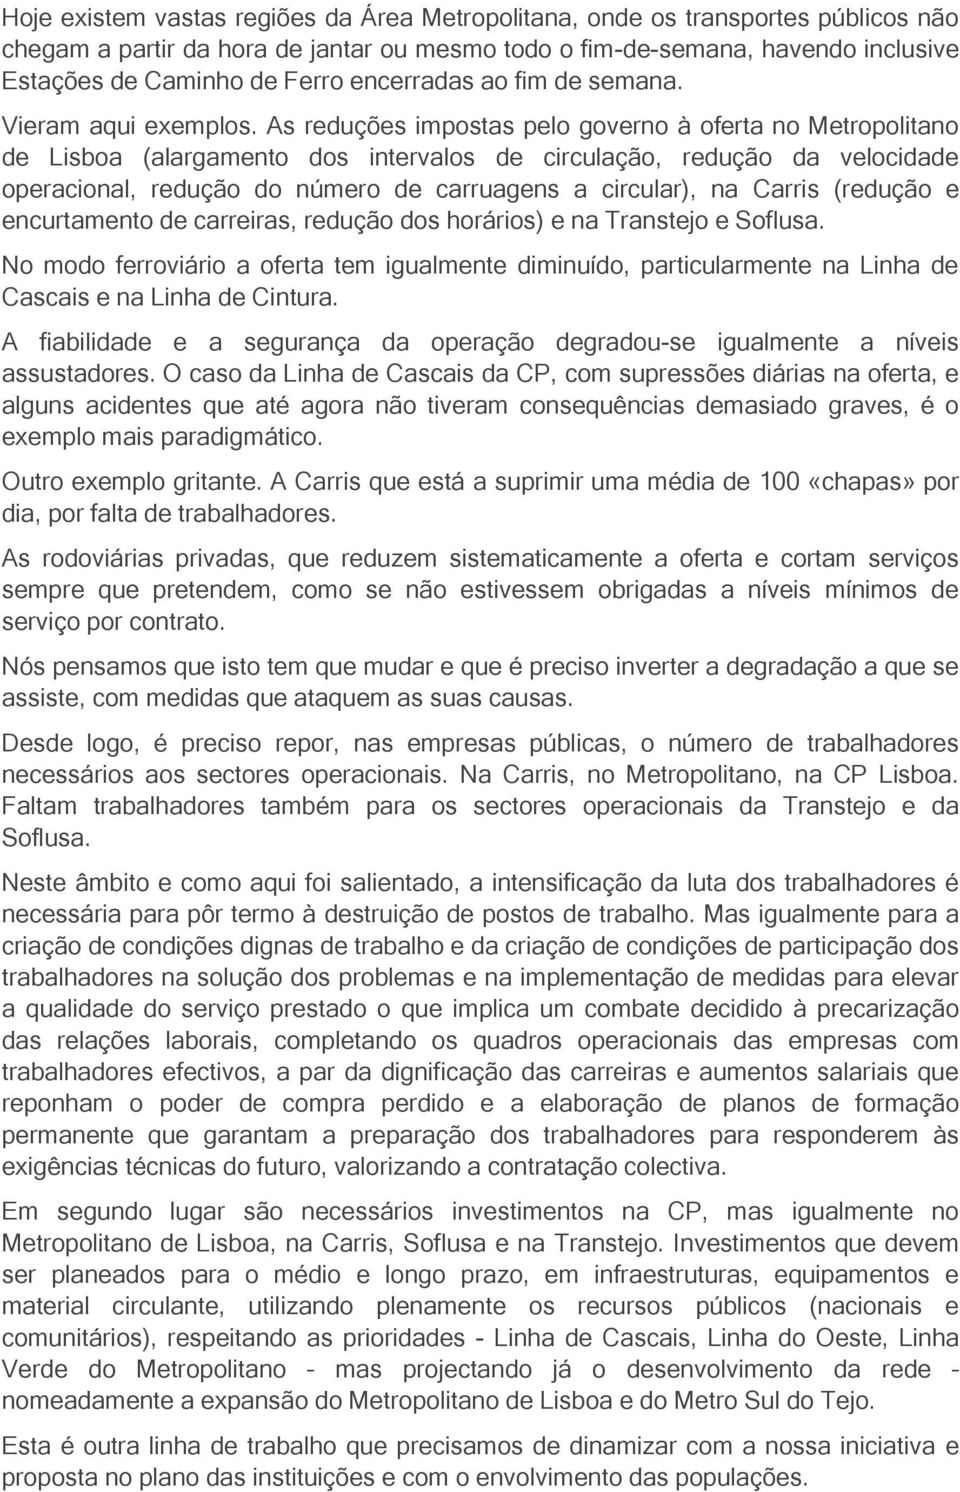 As reduções impostas pelo governo à oferta no Metropolitano de Lisboa (alargamento dos intervalos de circulação, redução da velocidade operacional, redução do número de carruagens a circular), na